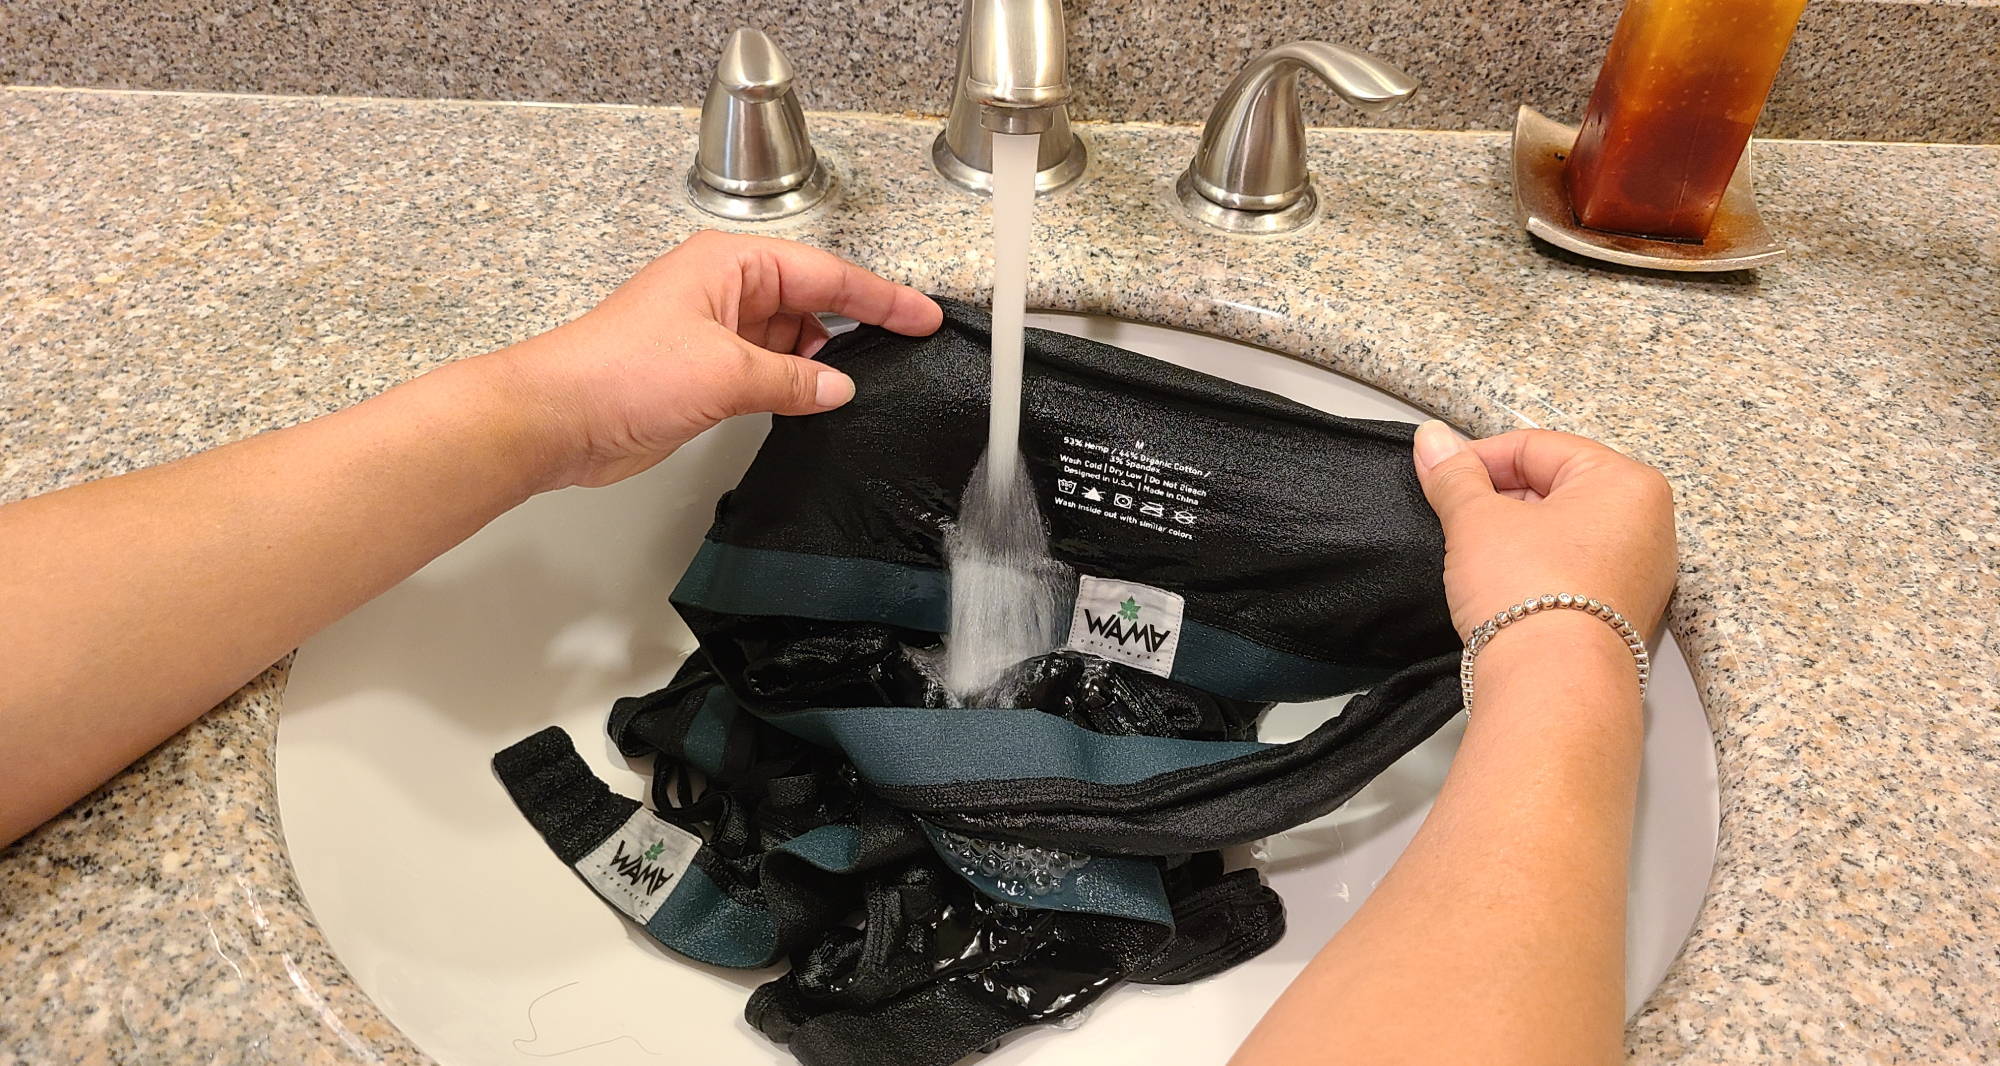 Woman showing how to hand wash underwear underwear in the sink.